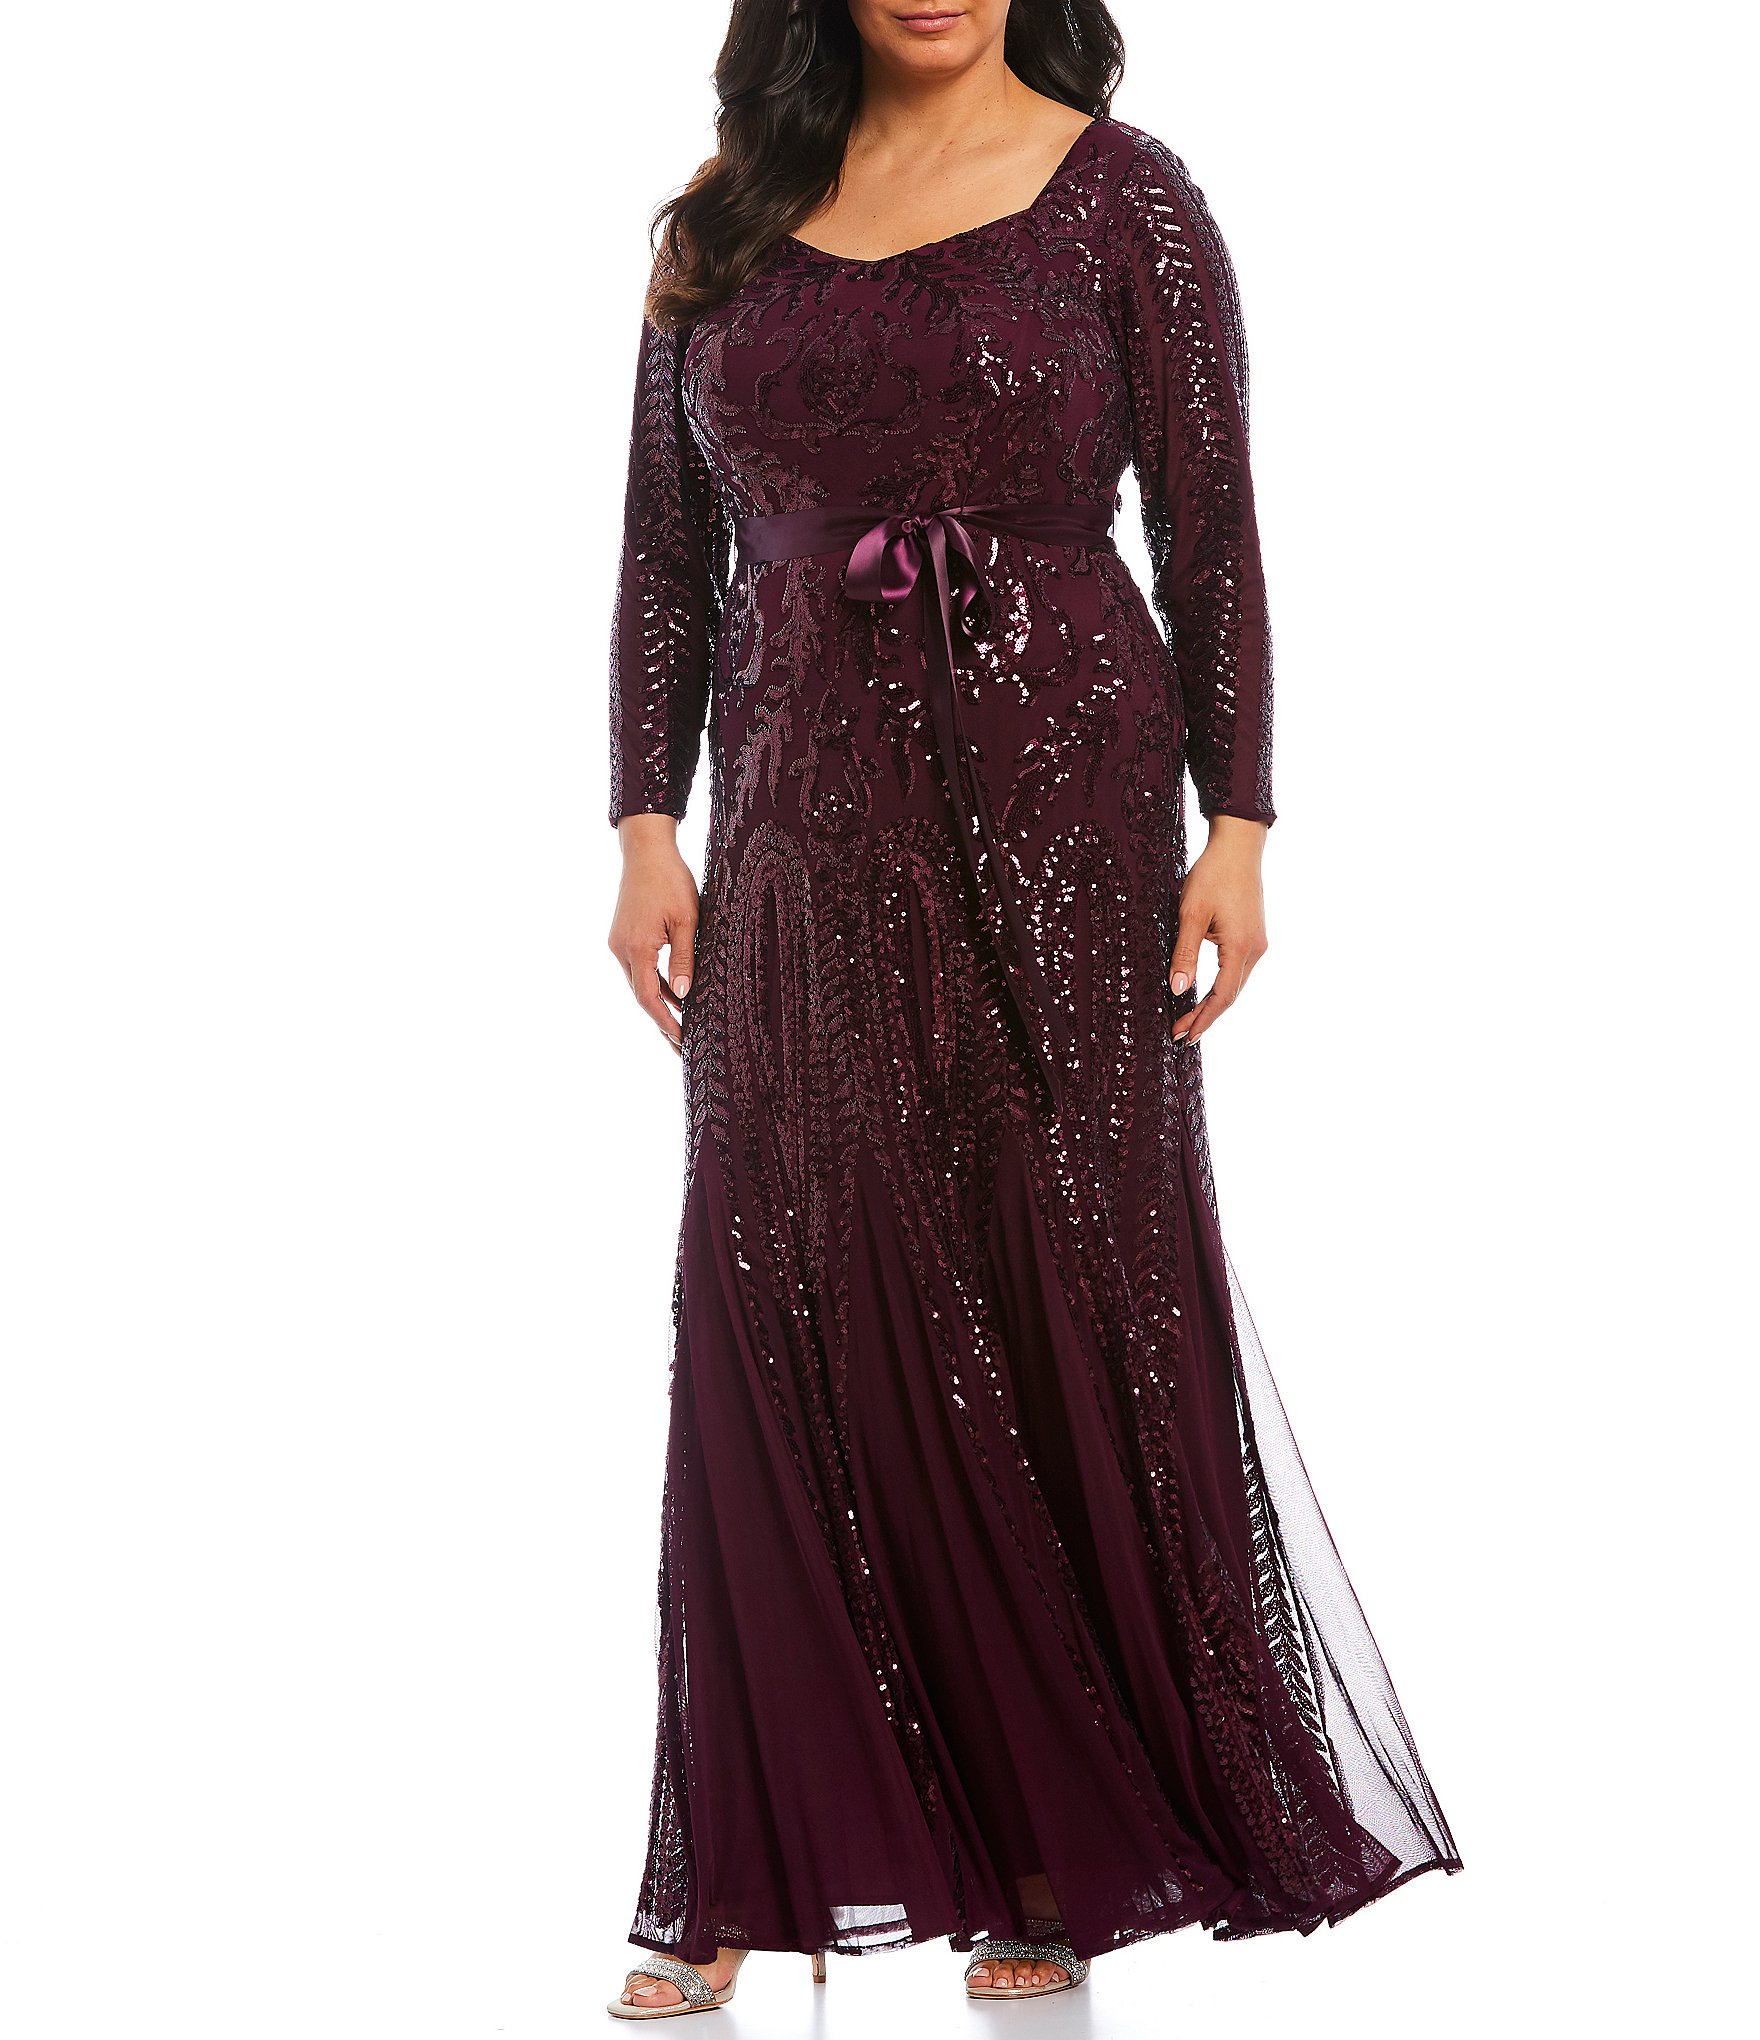 purple gown plus size